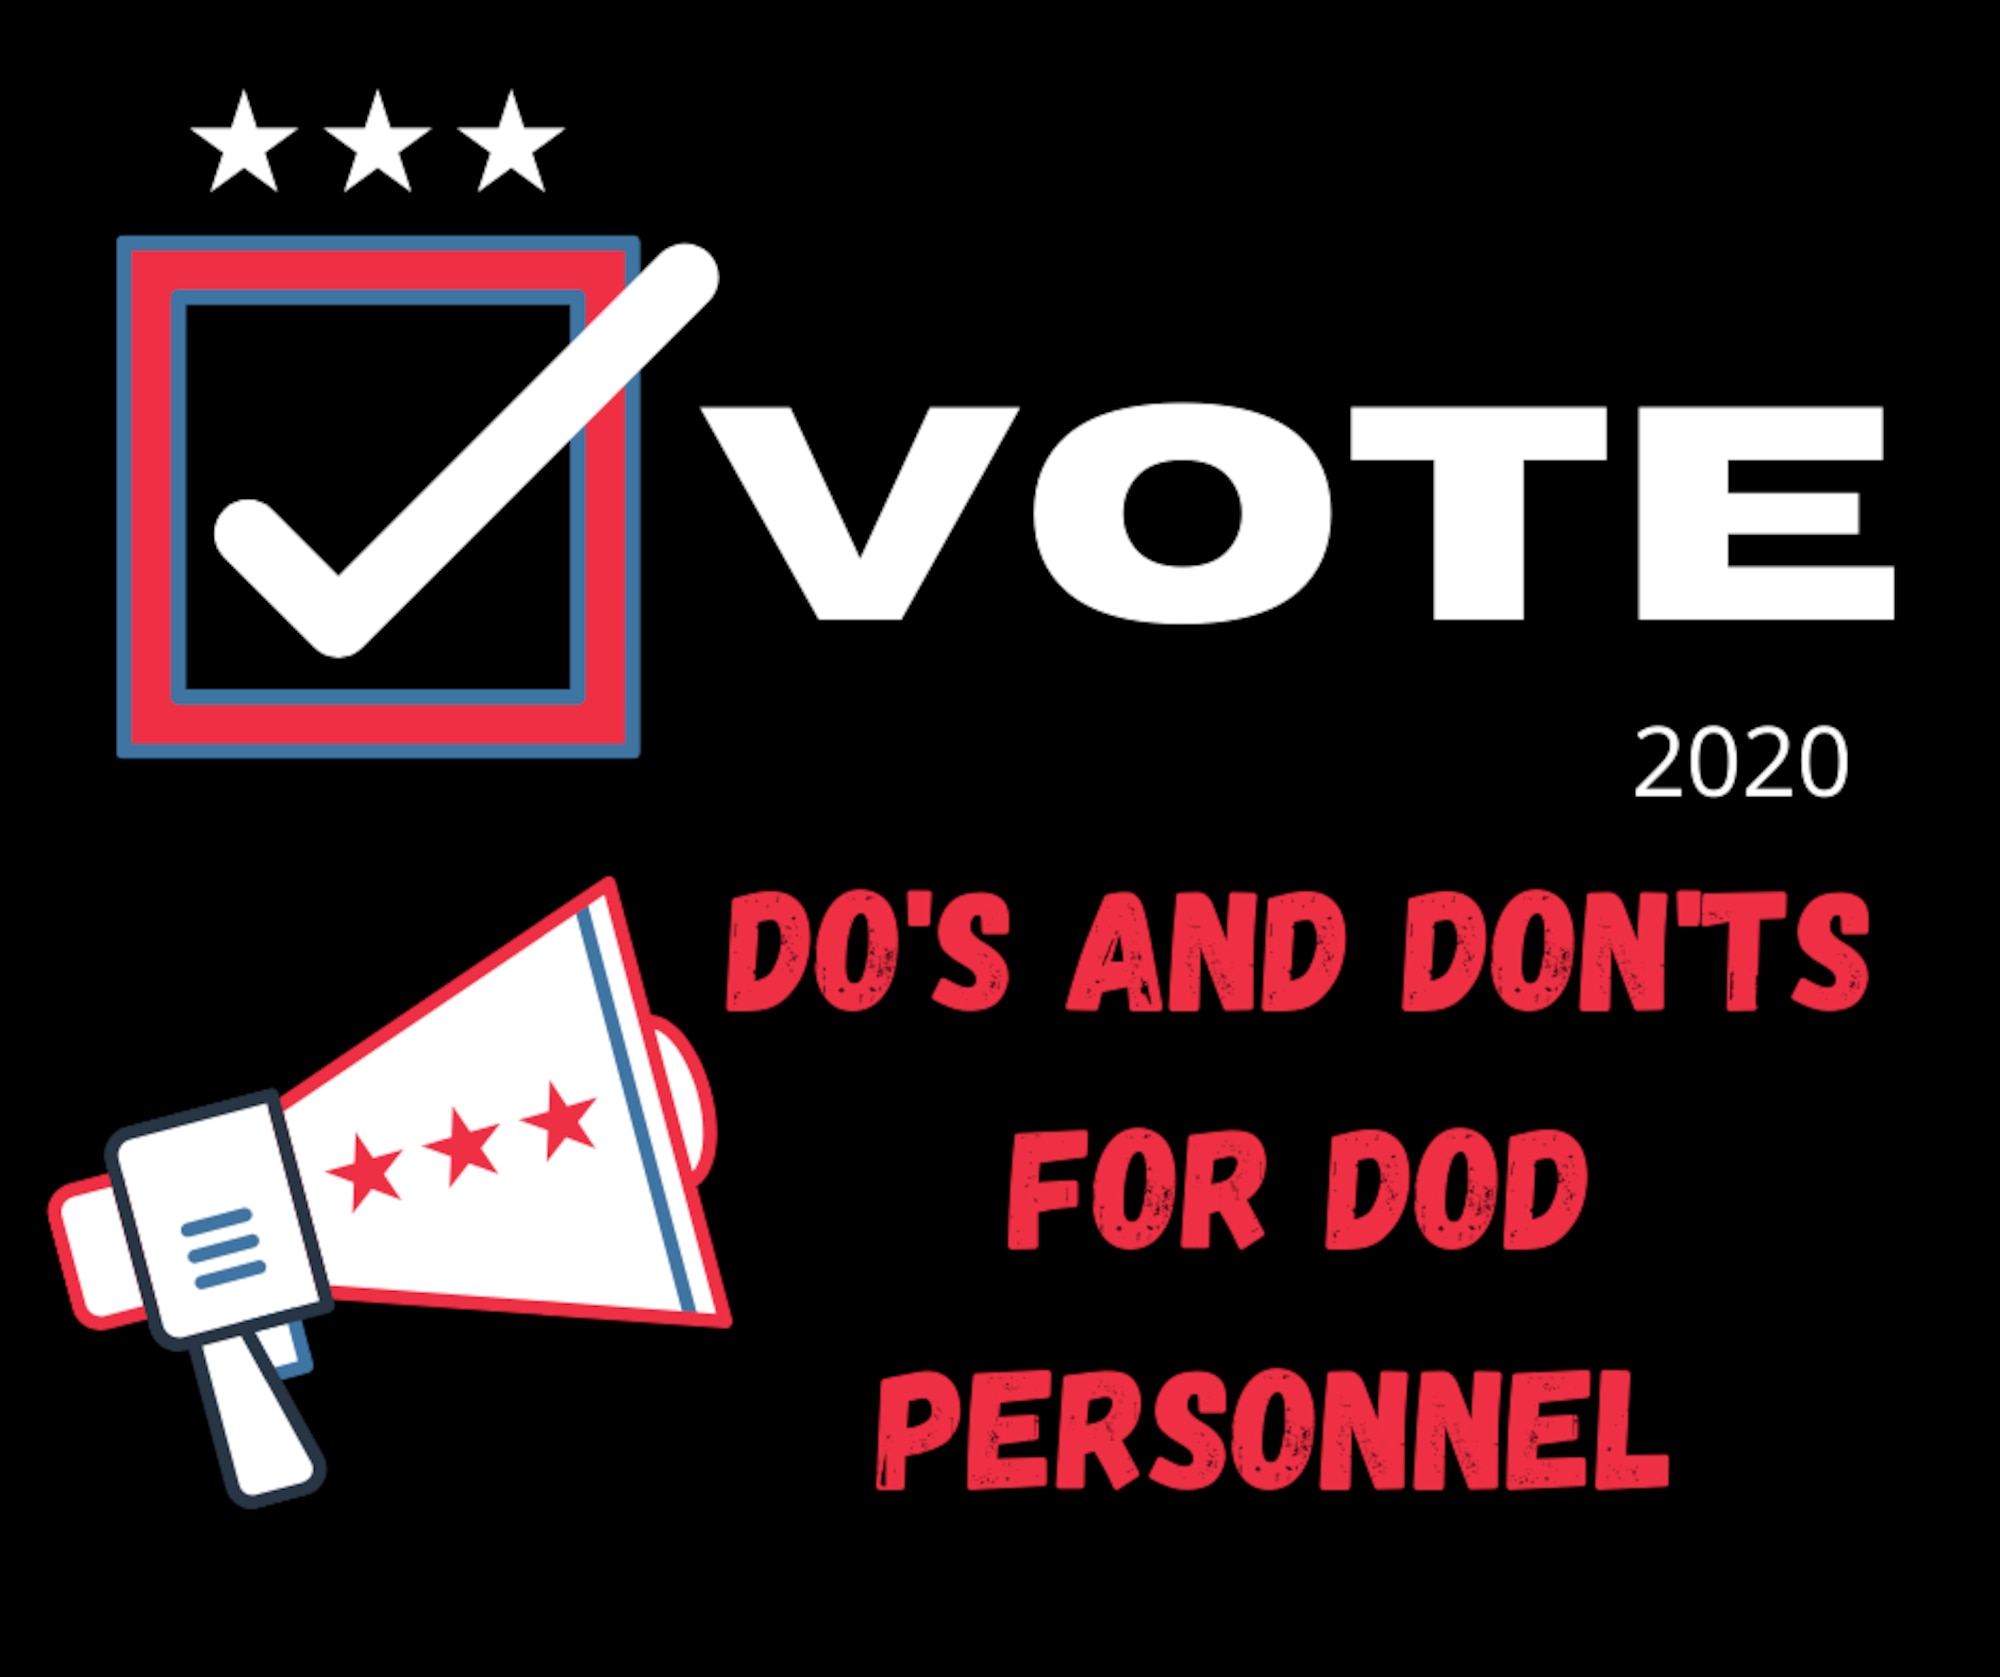 Vote 2020 graphic